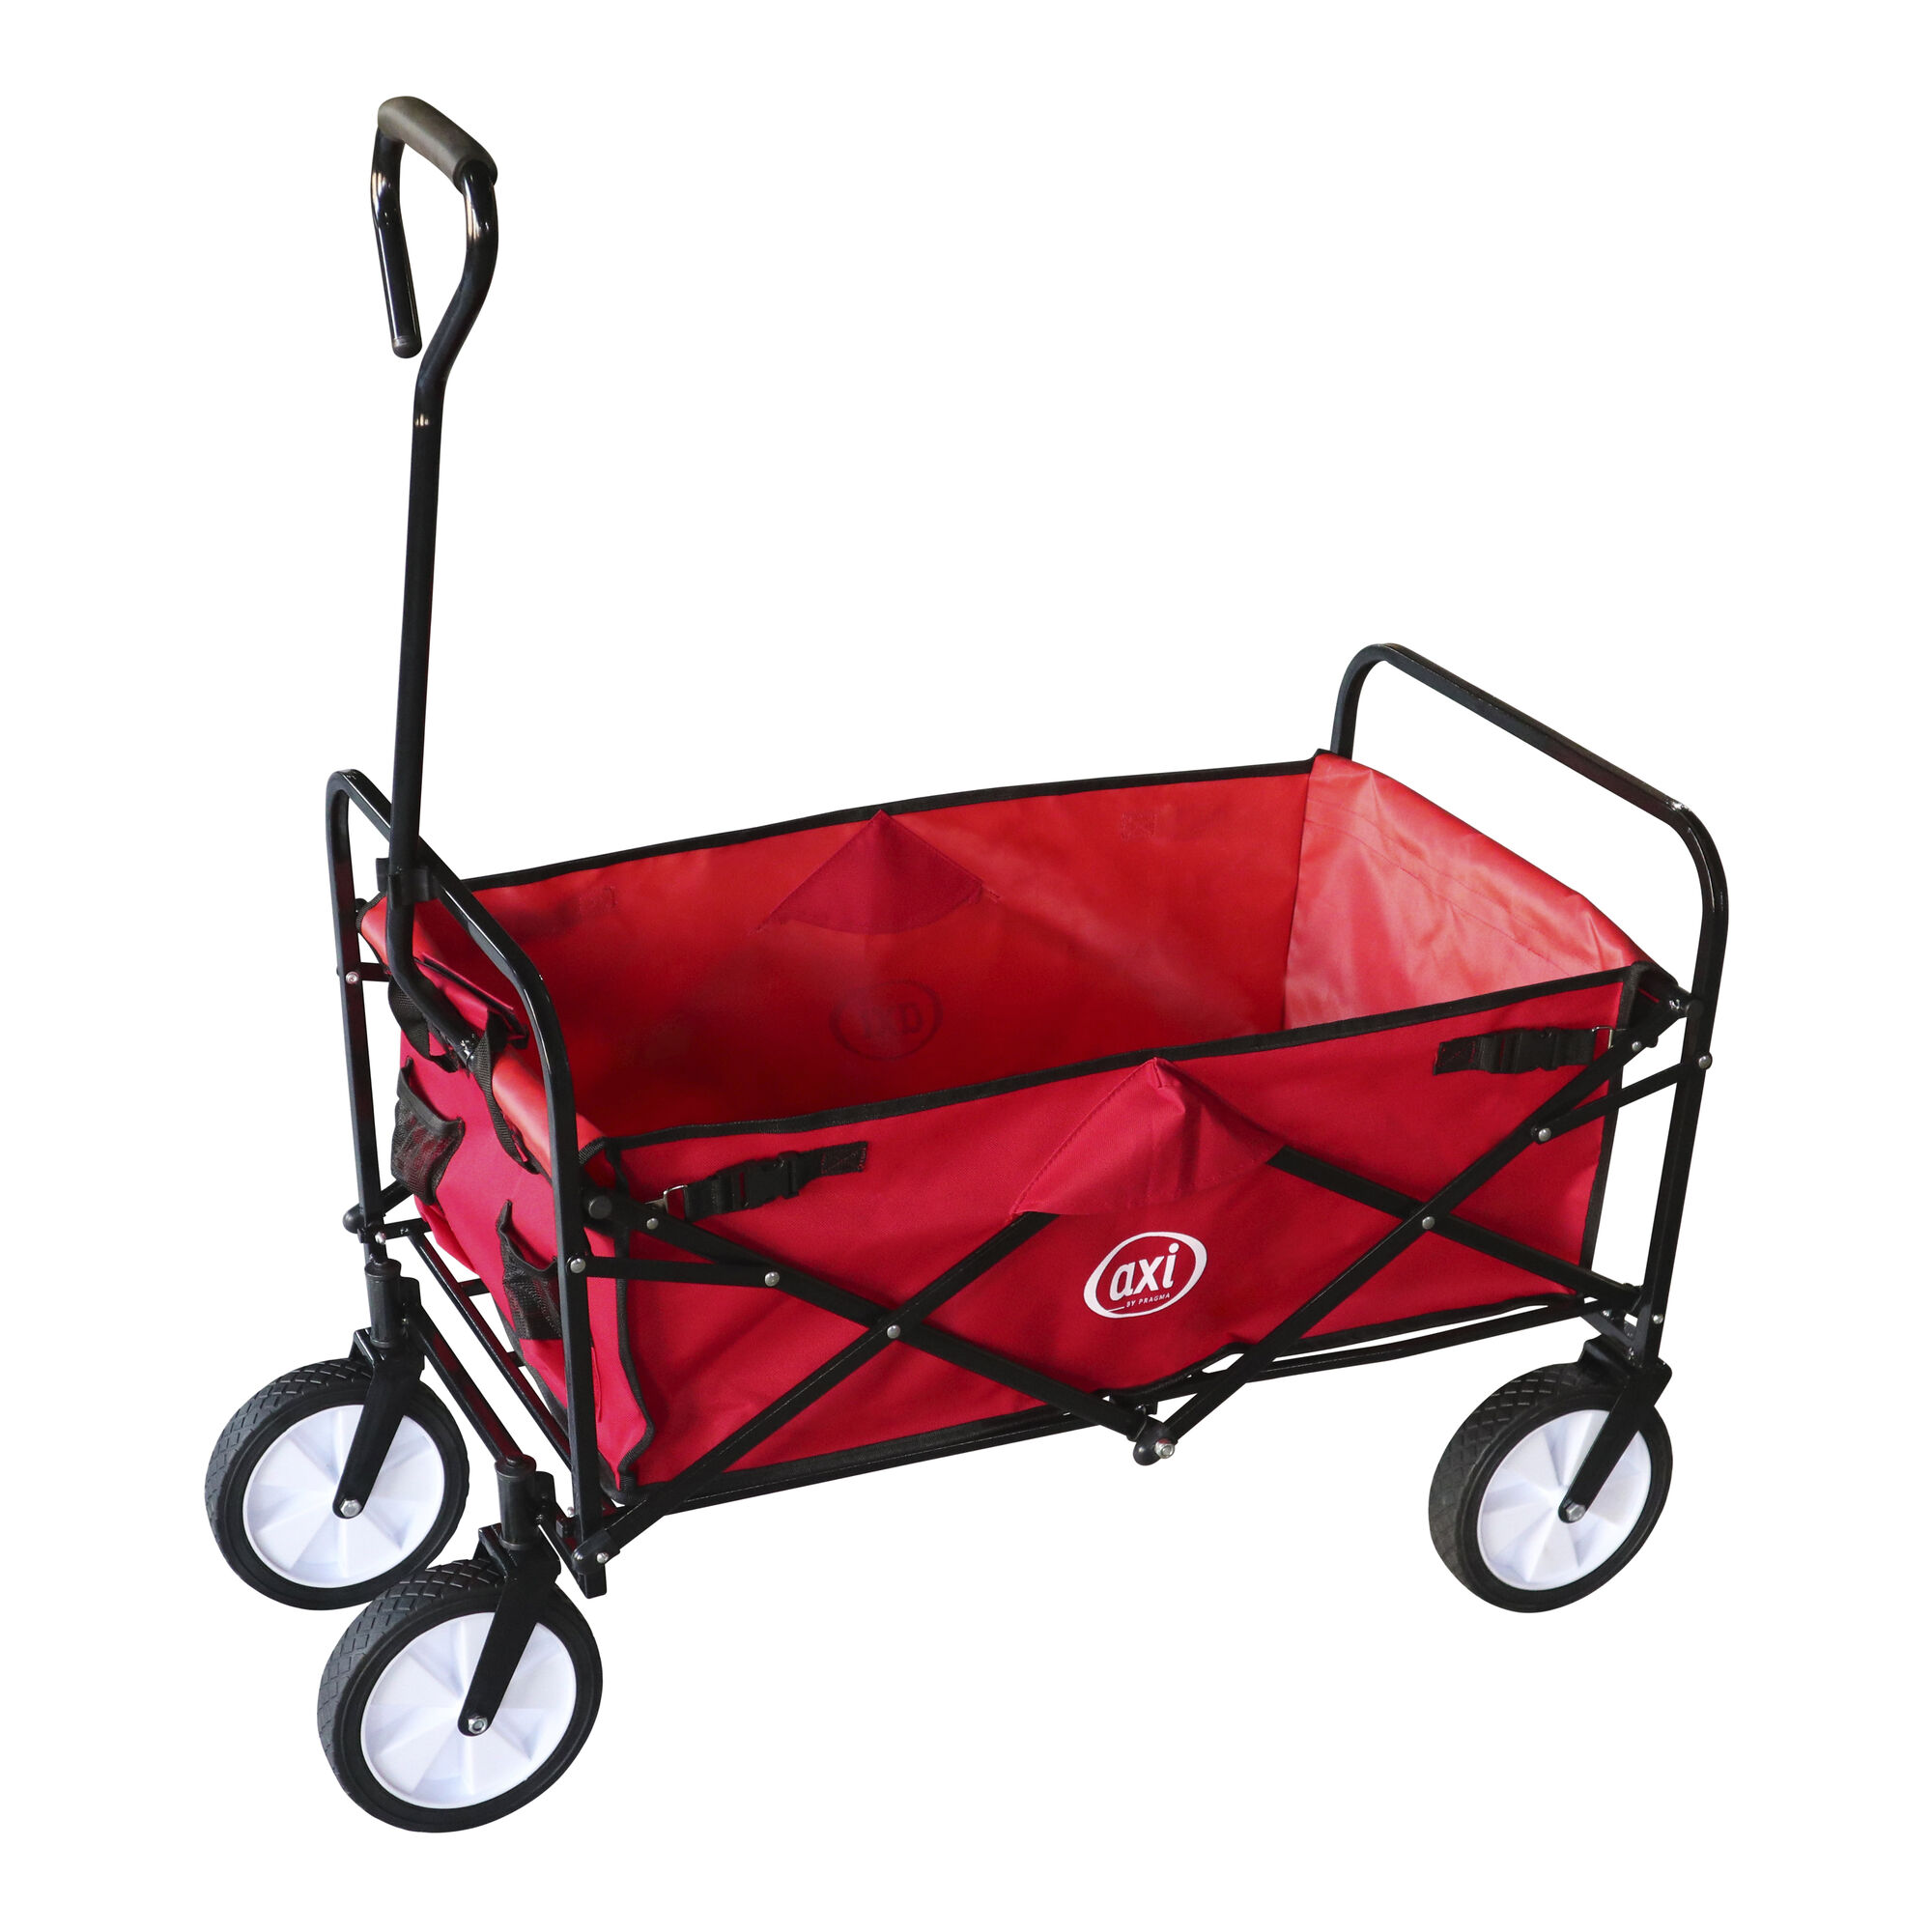 SUNNY Billy Chariot de Transport en Bois - Chariot pour Enfants rouge -  Capacité 100 kilos